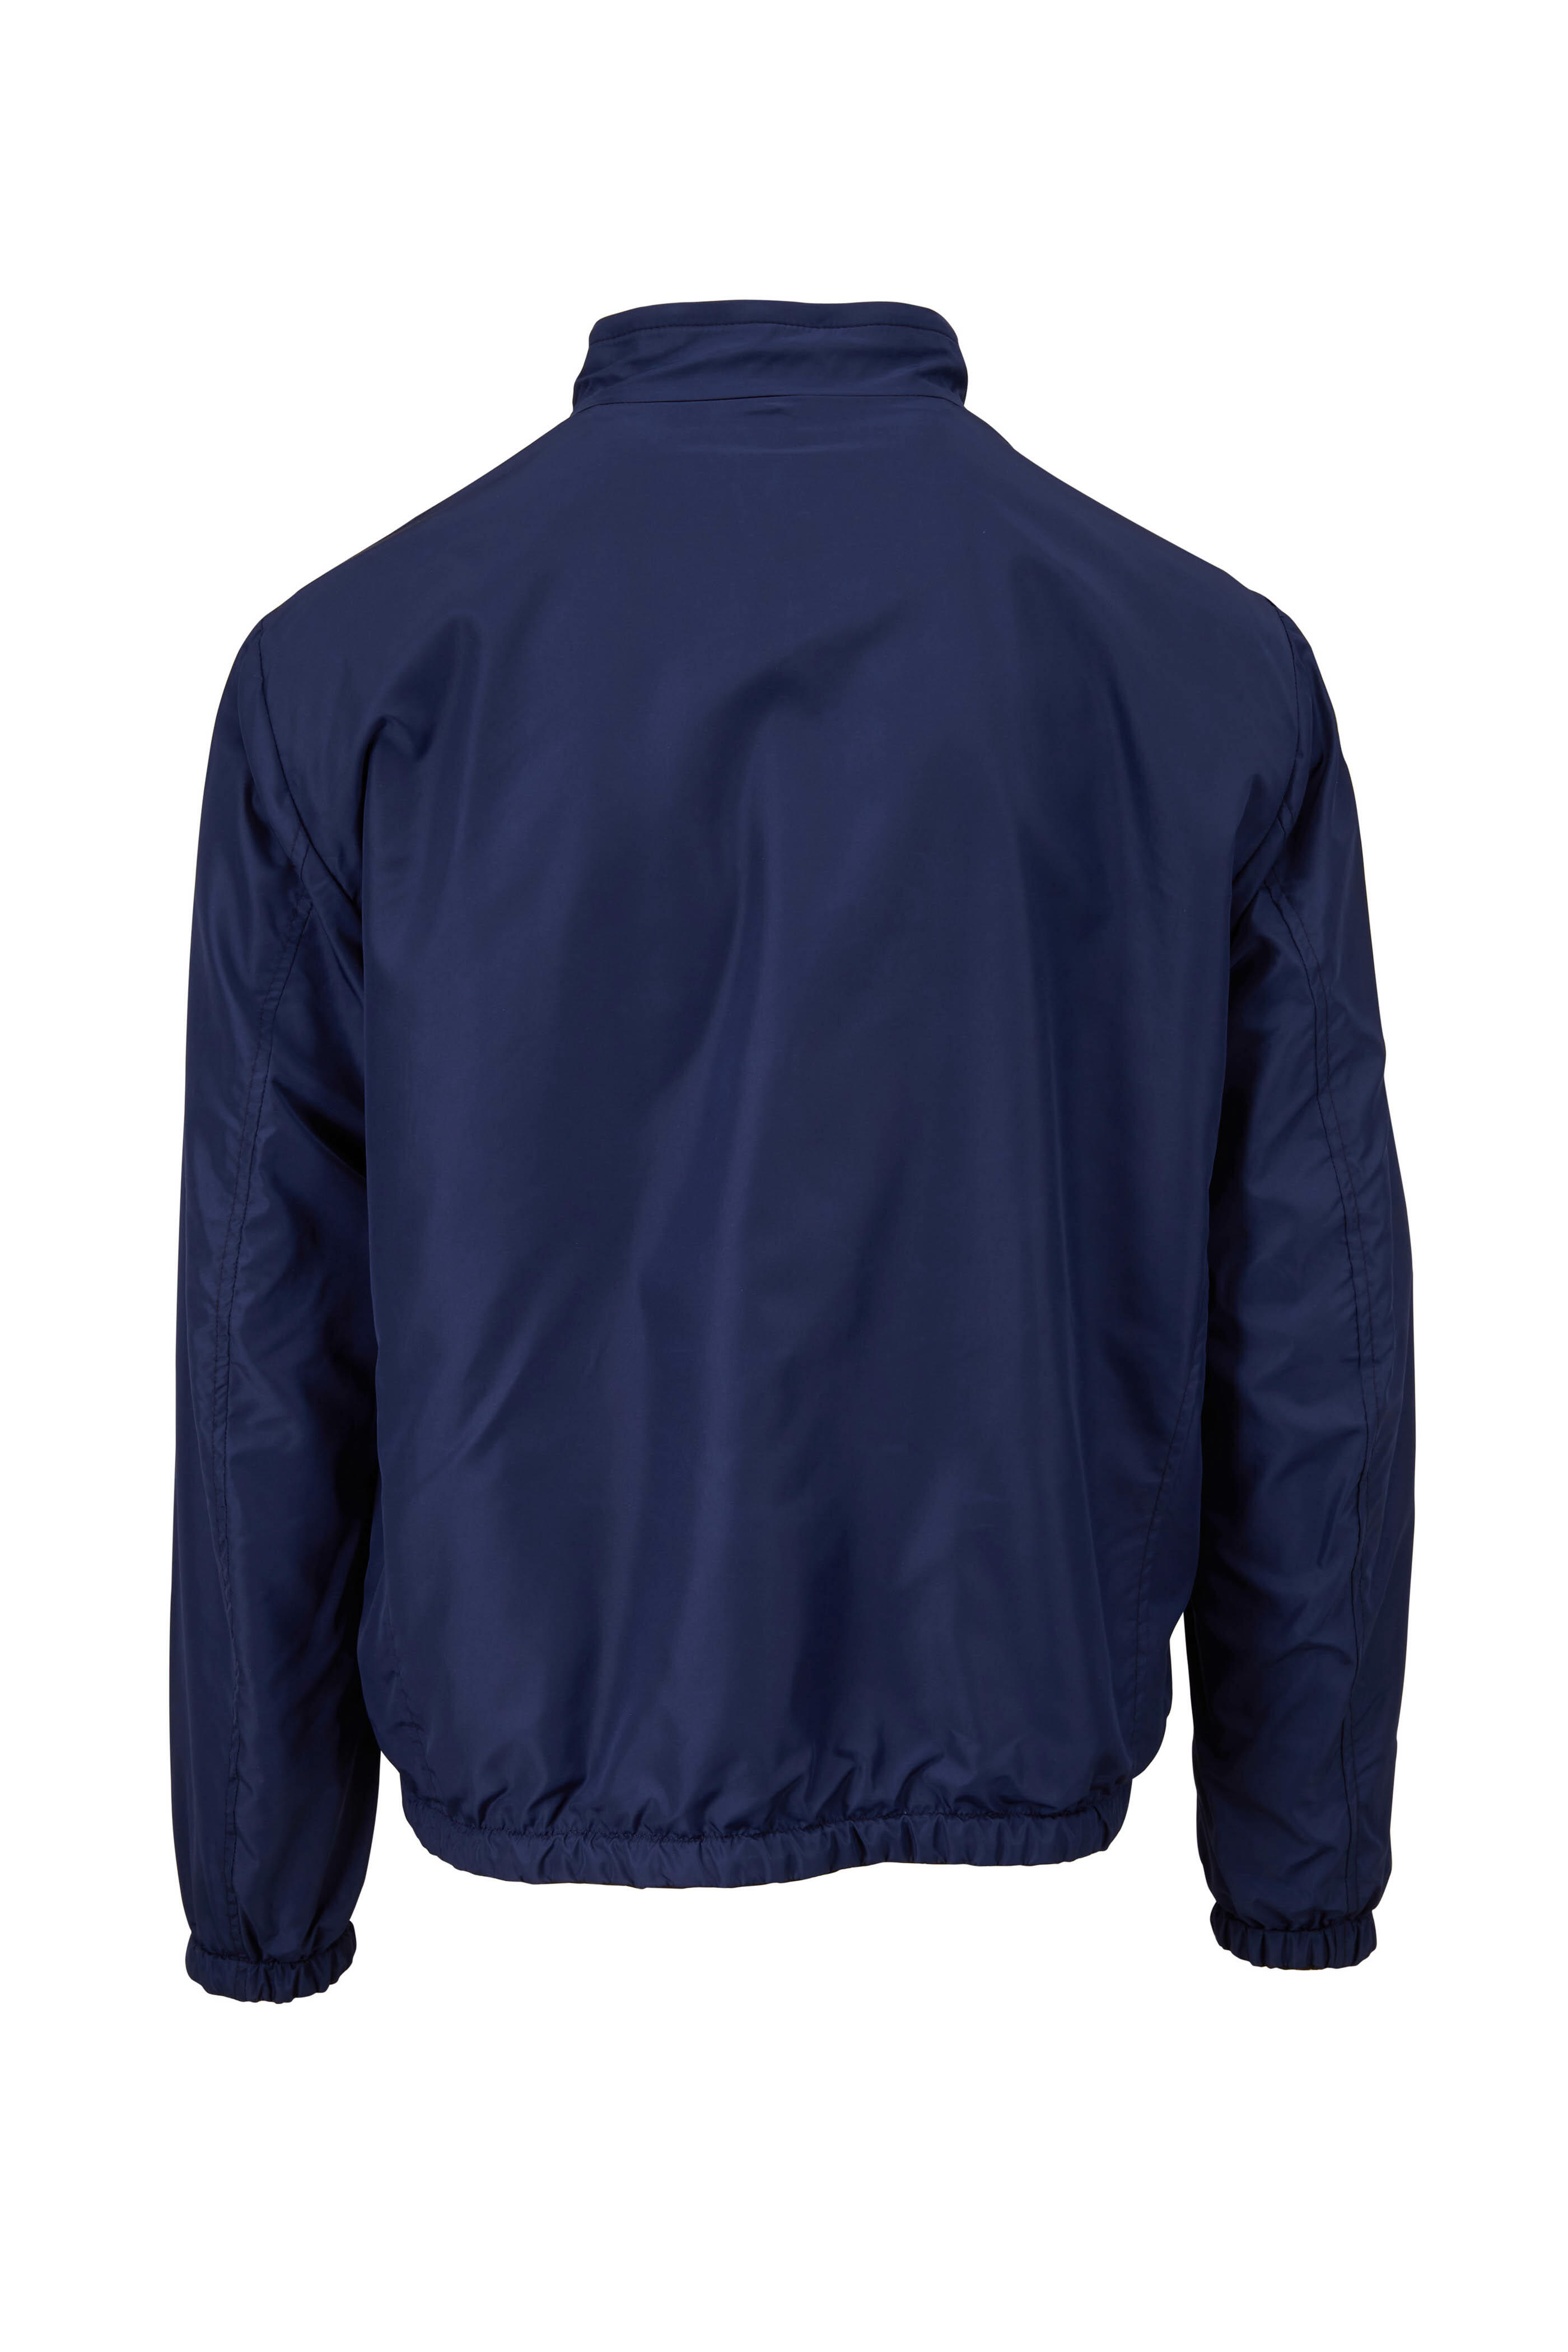 Corneliani leather bomber jacket - Blue